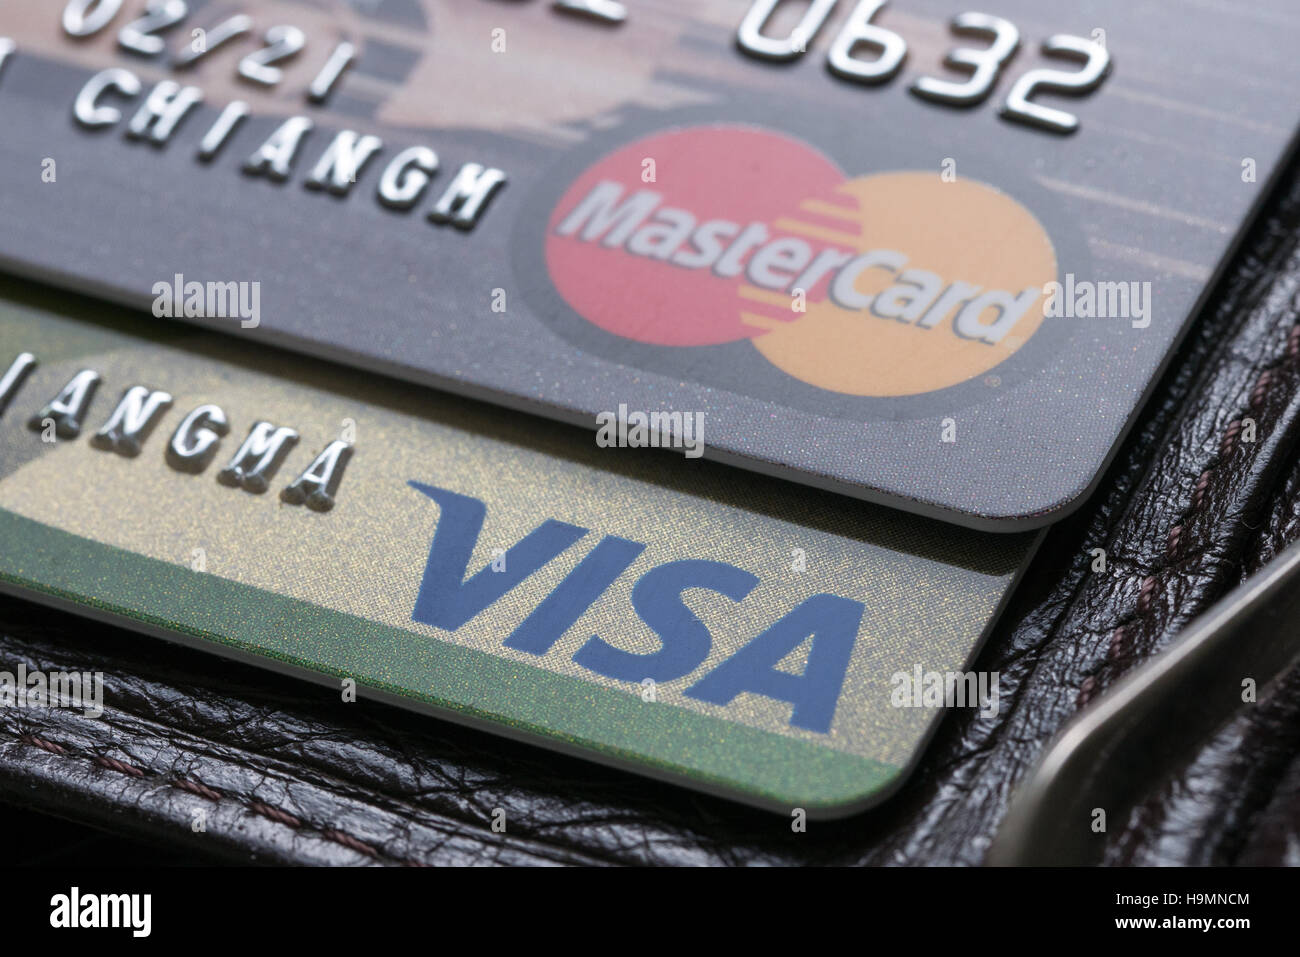 Bangkok, Thailand 25 feb 2016, close up of credit cards Stock Photo